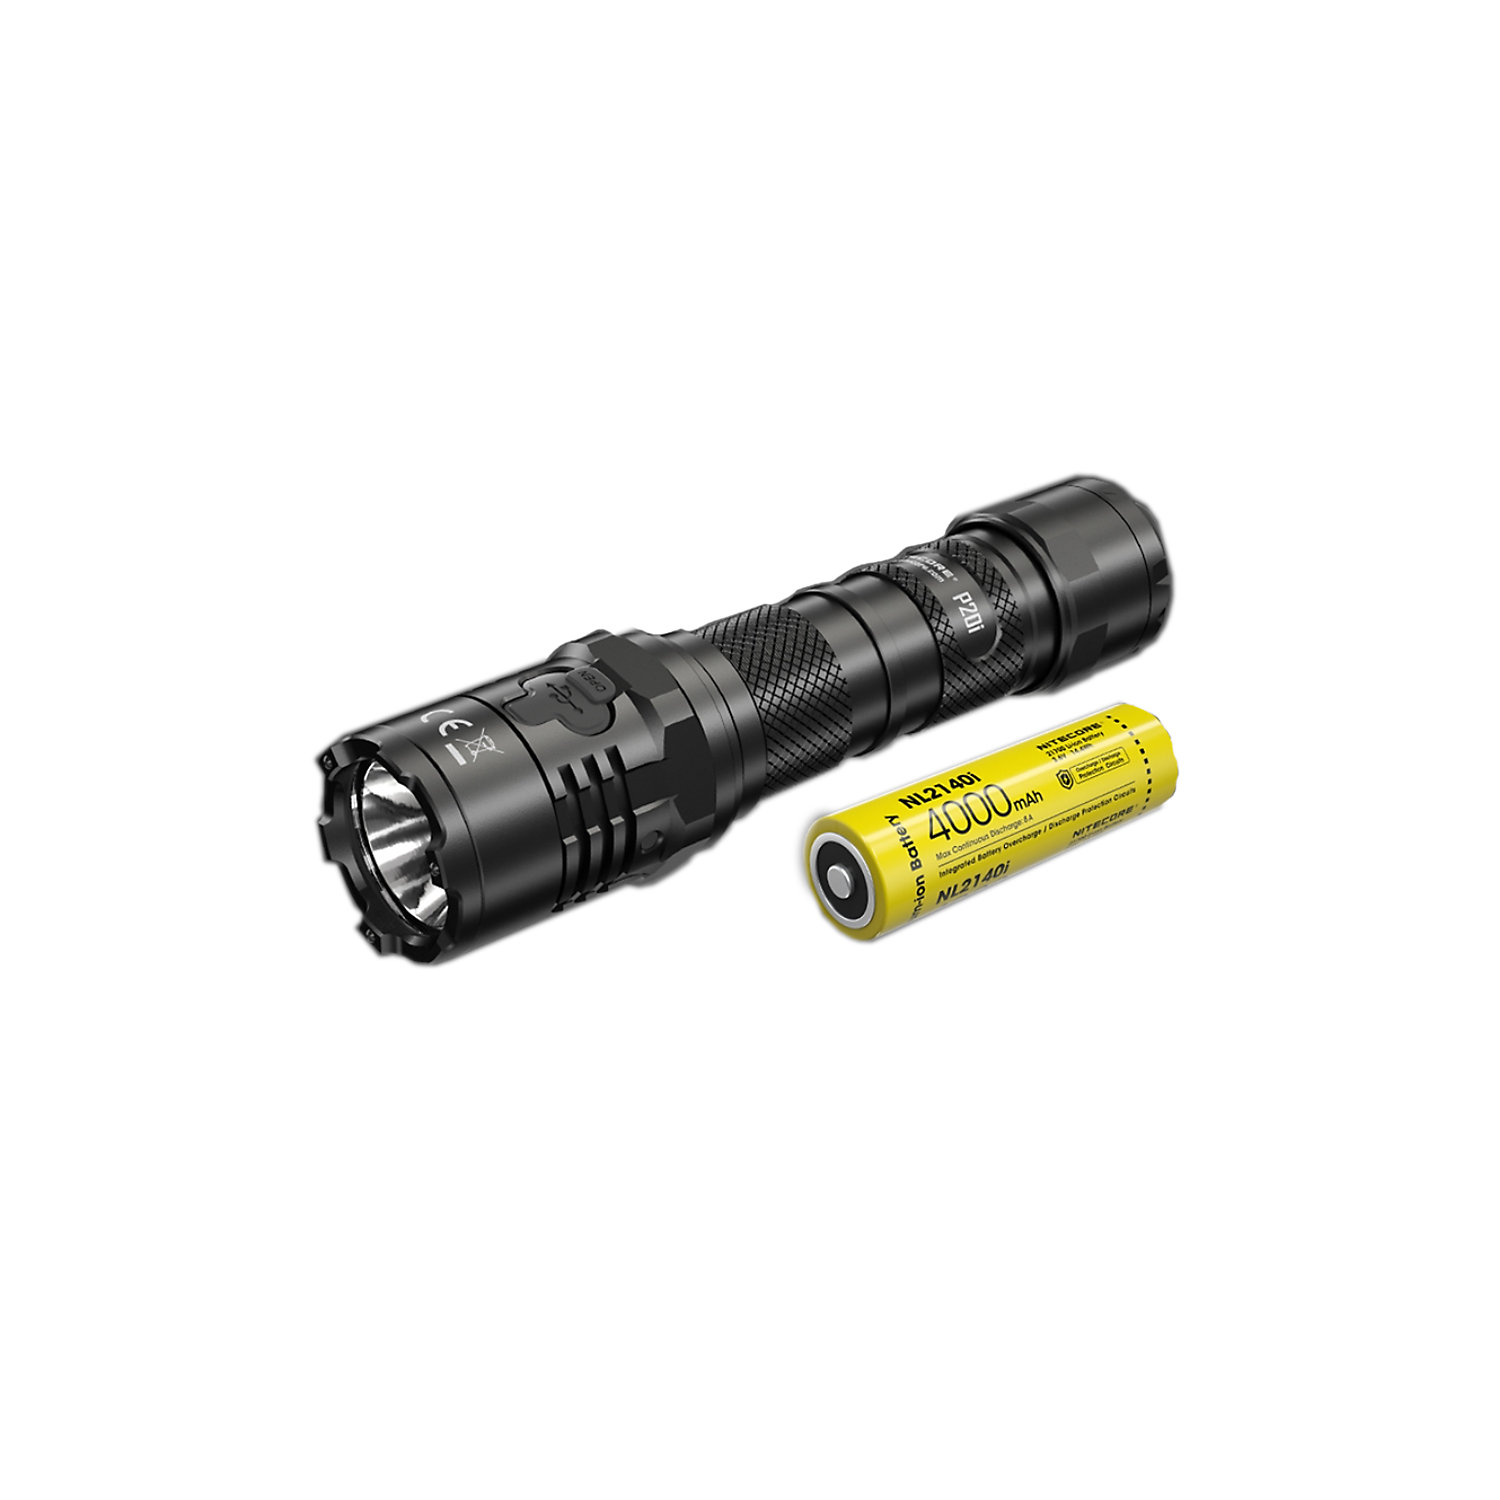 NITECORE P20i 1800 Lumen USB-C Rechargeable LED Flashlight